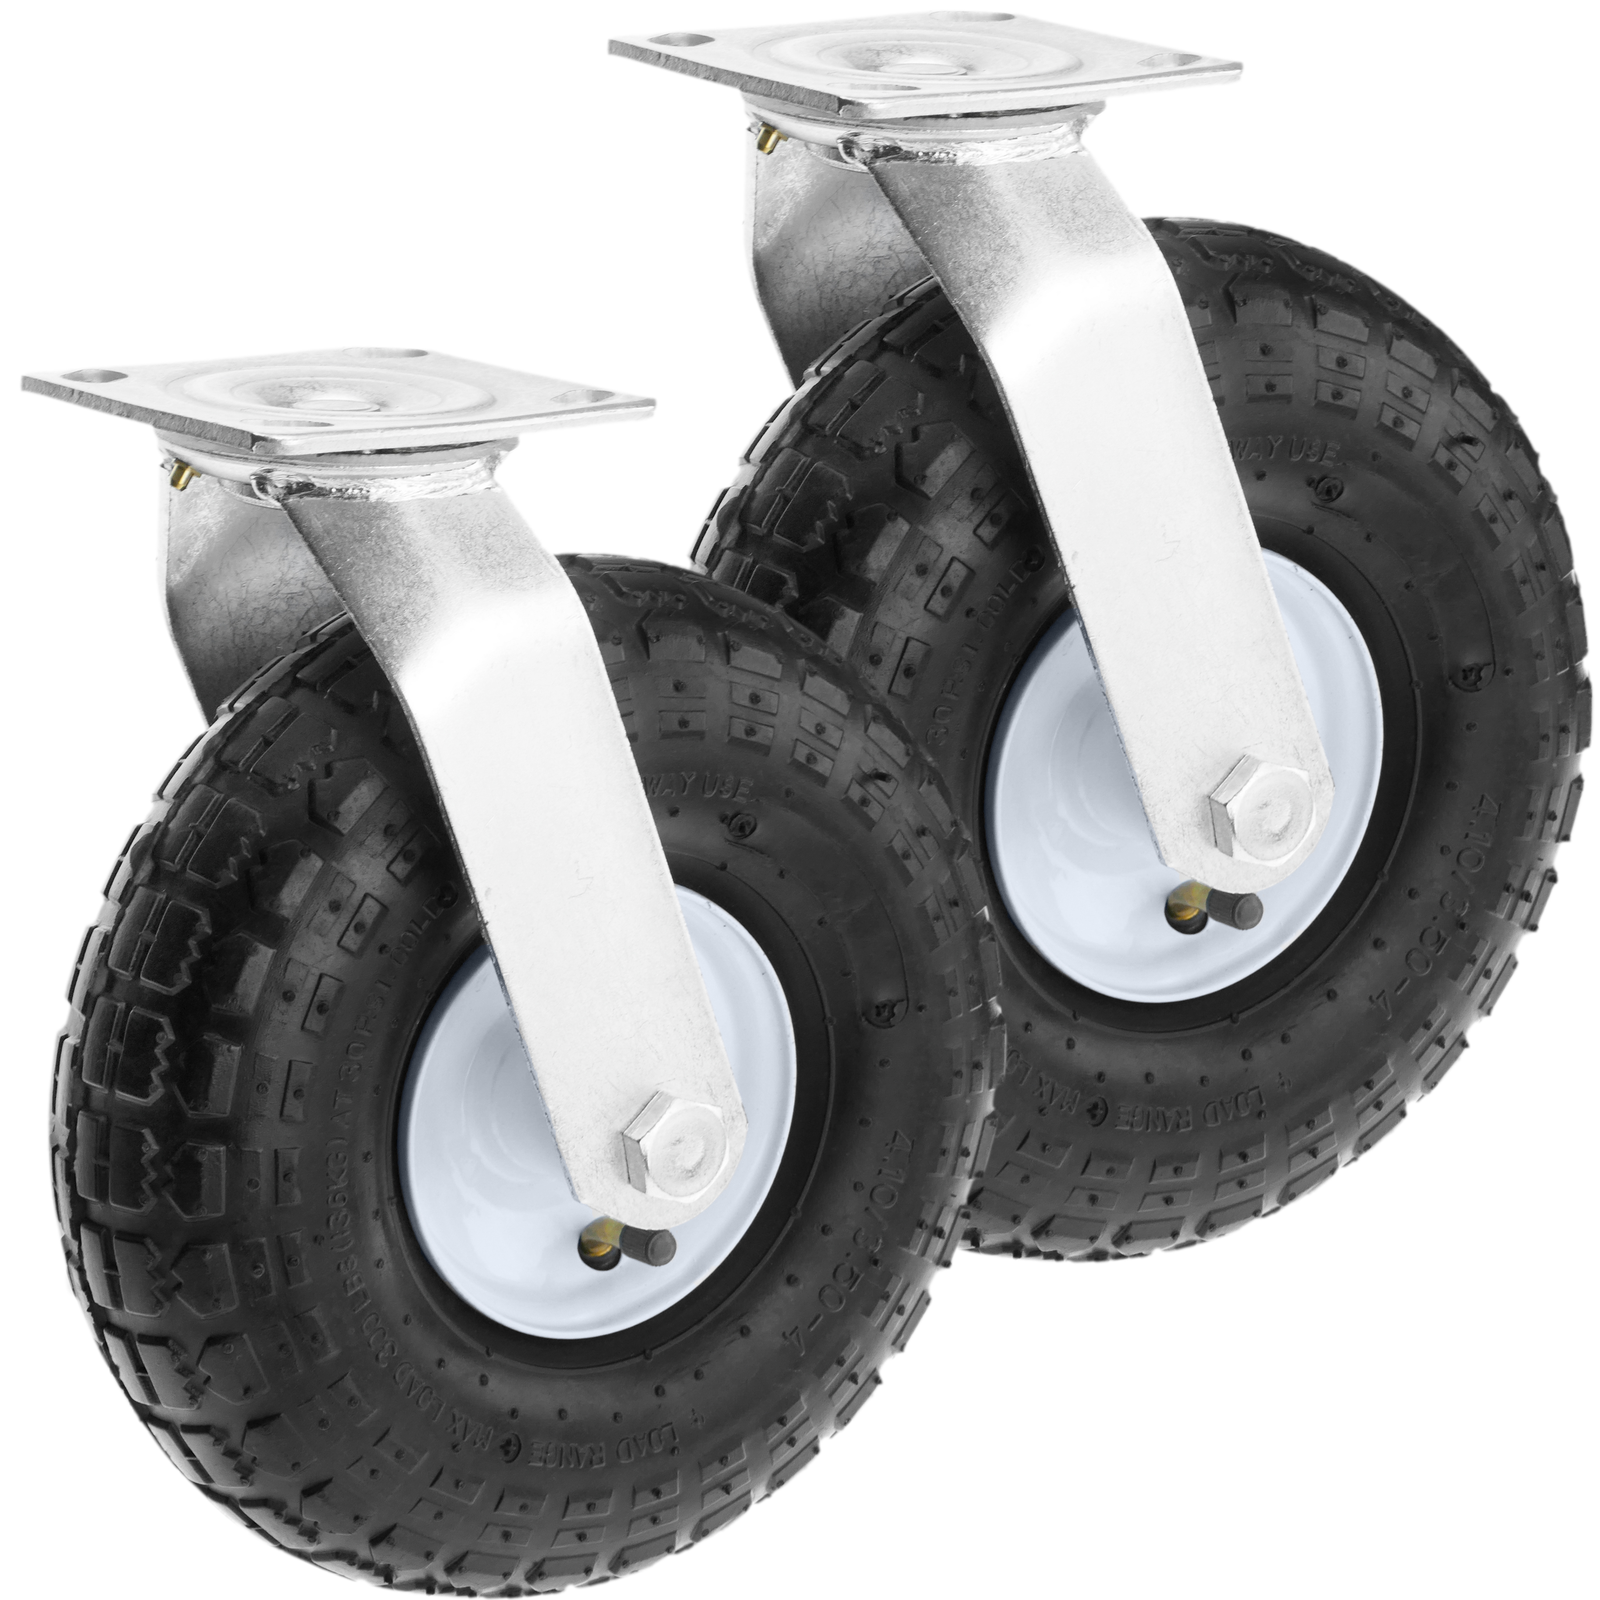 Roulette pivotante diamètre 260 mm roue pneu gonflable 3.00-4 - 135 Kg :  : Bricolage